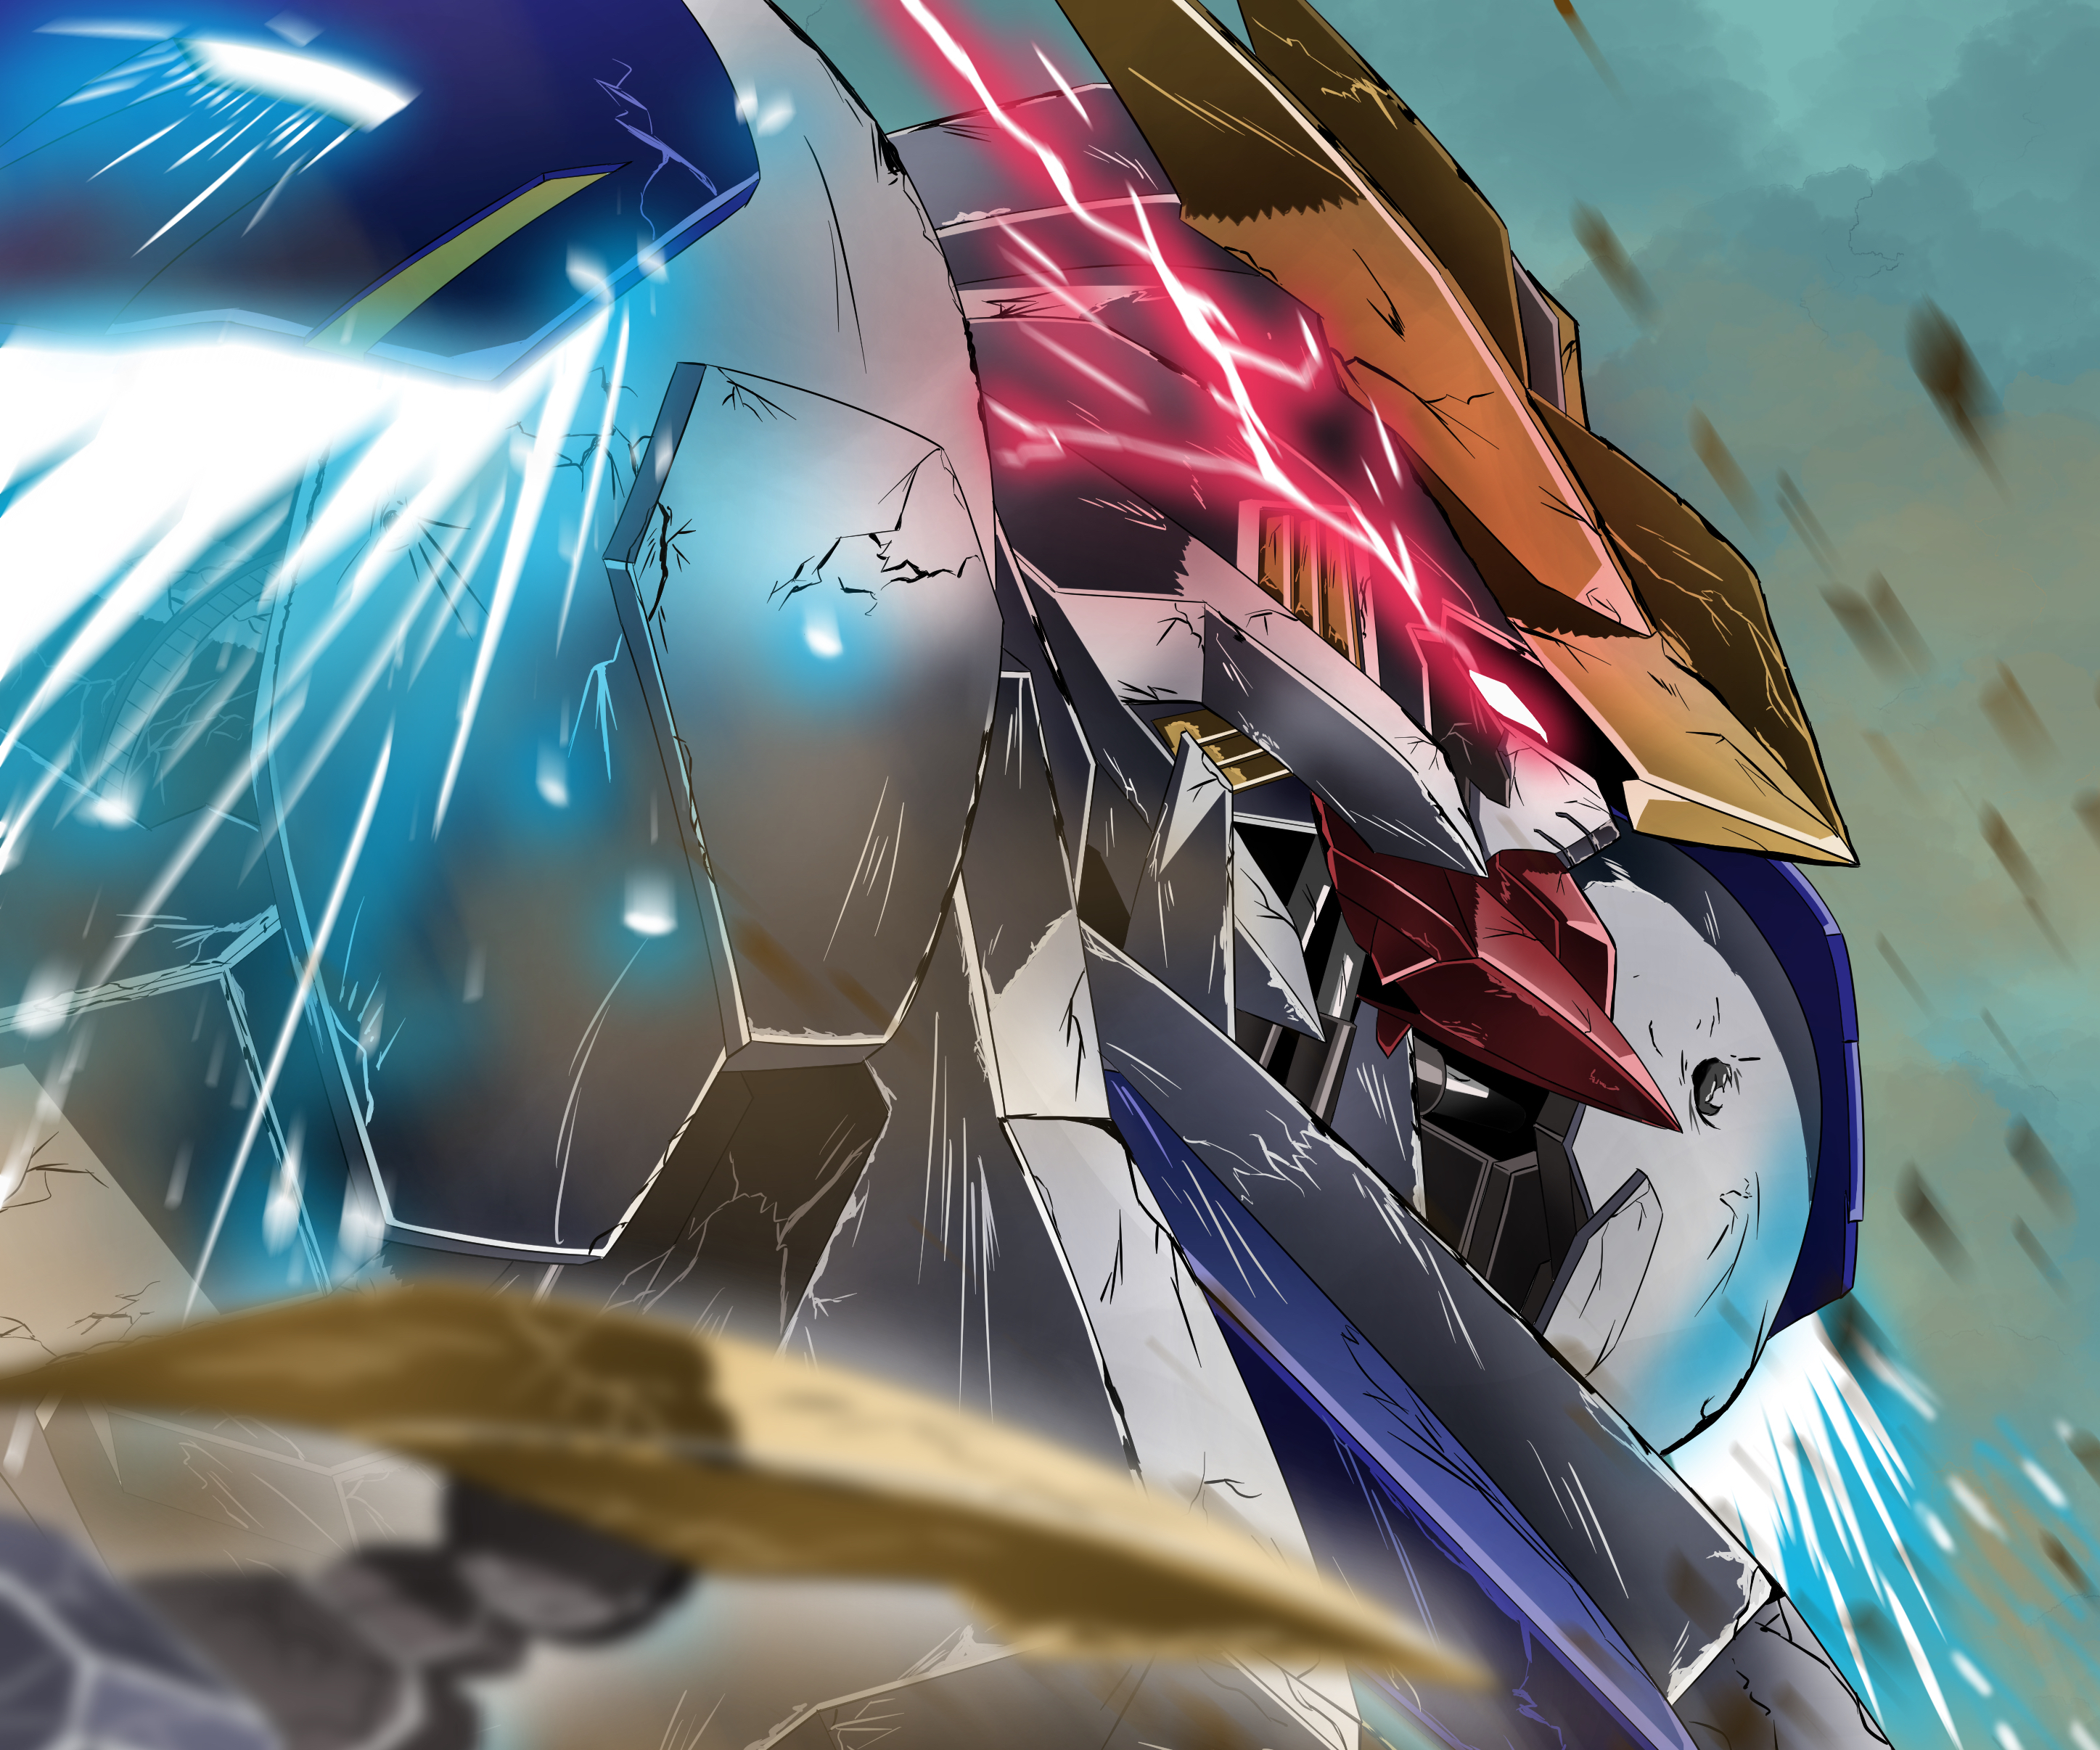 Mobile Suit Gundam IronBlooded Orphans Season 2 Episode 12 Review   Kvasir 369s Anime Manga and Game Blog